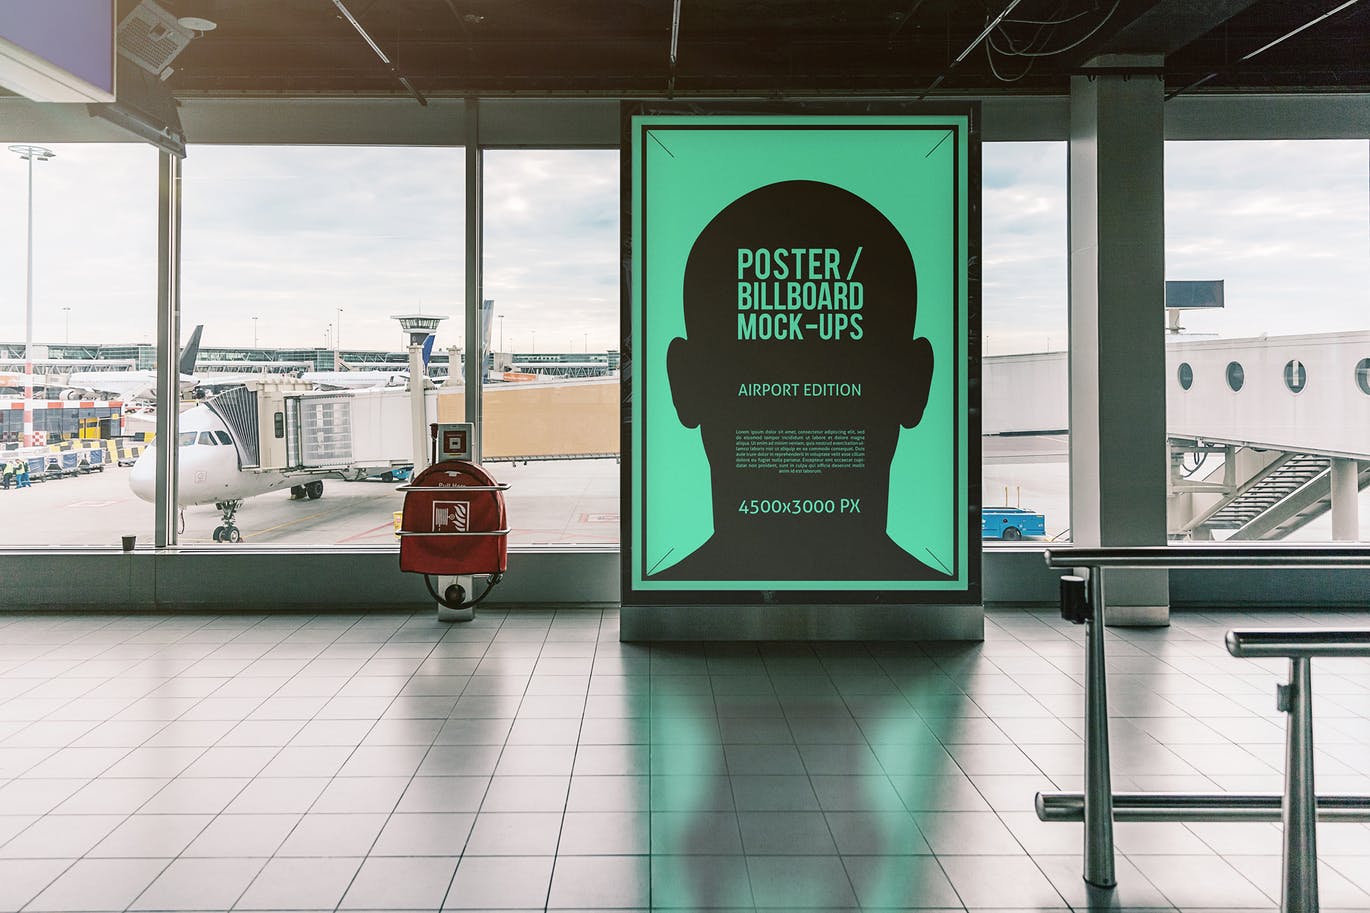 机场顾客通道海报/广告牌样机第一素材精选模板#3 Poster / Billboard Mock-ups – Airport Edition #3插图